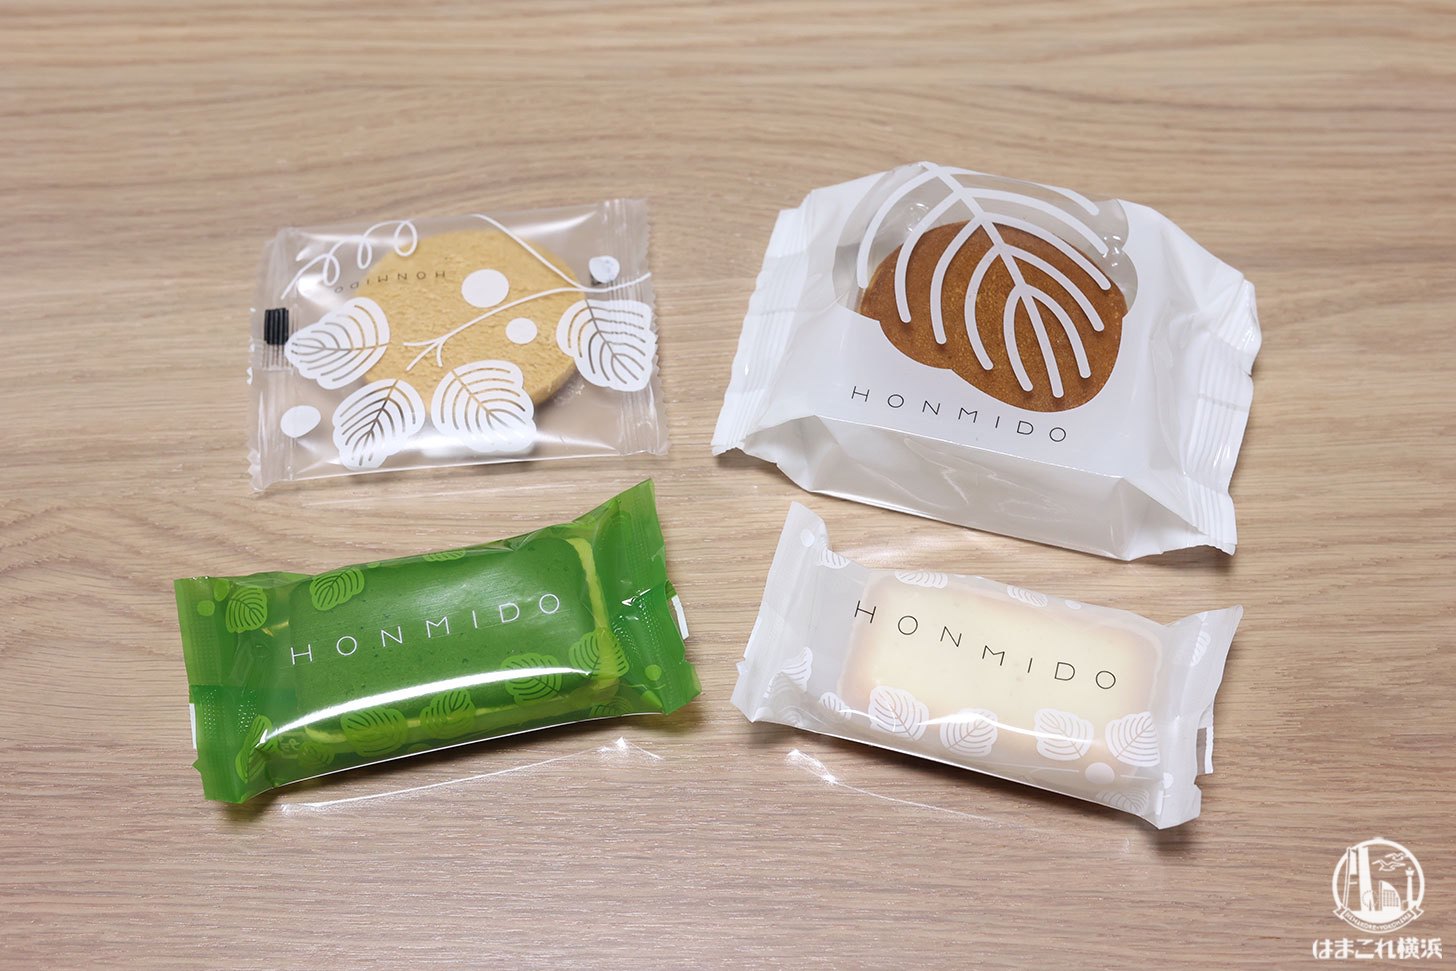 HONMIDOの菓子4種類